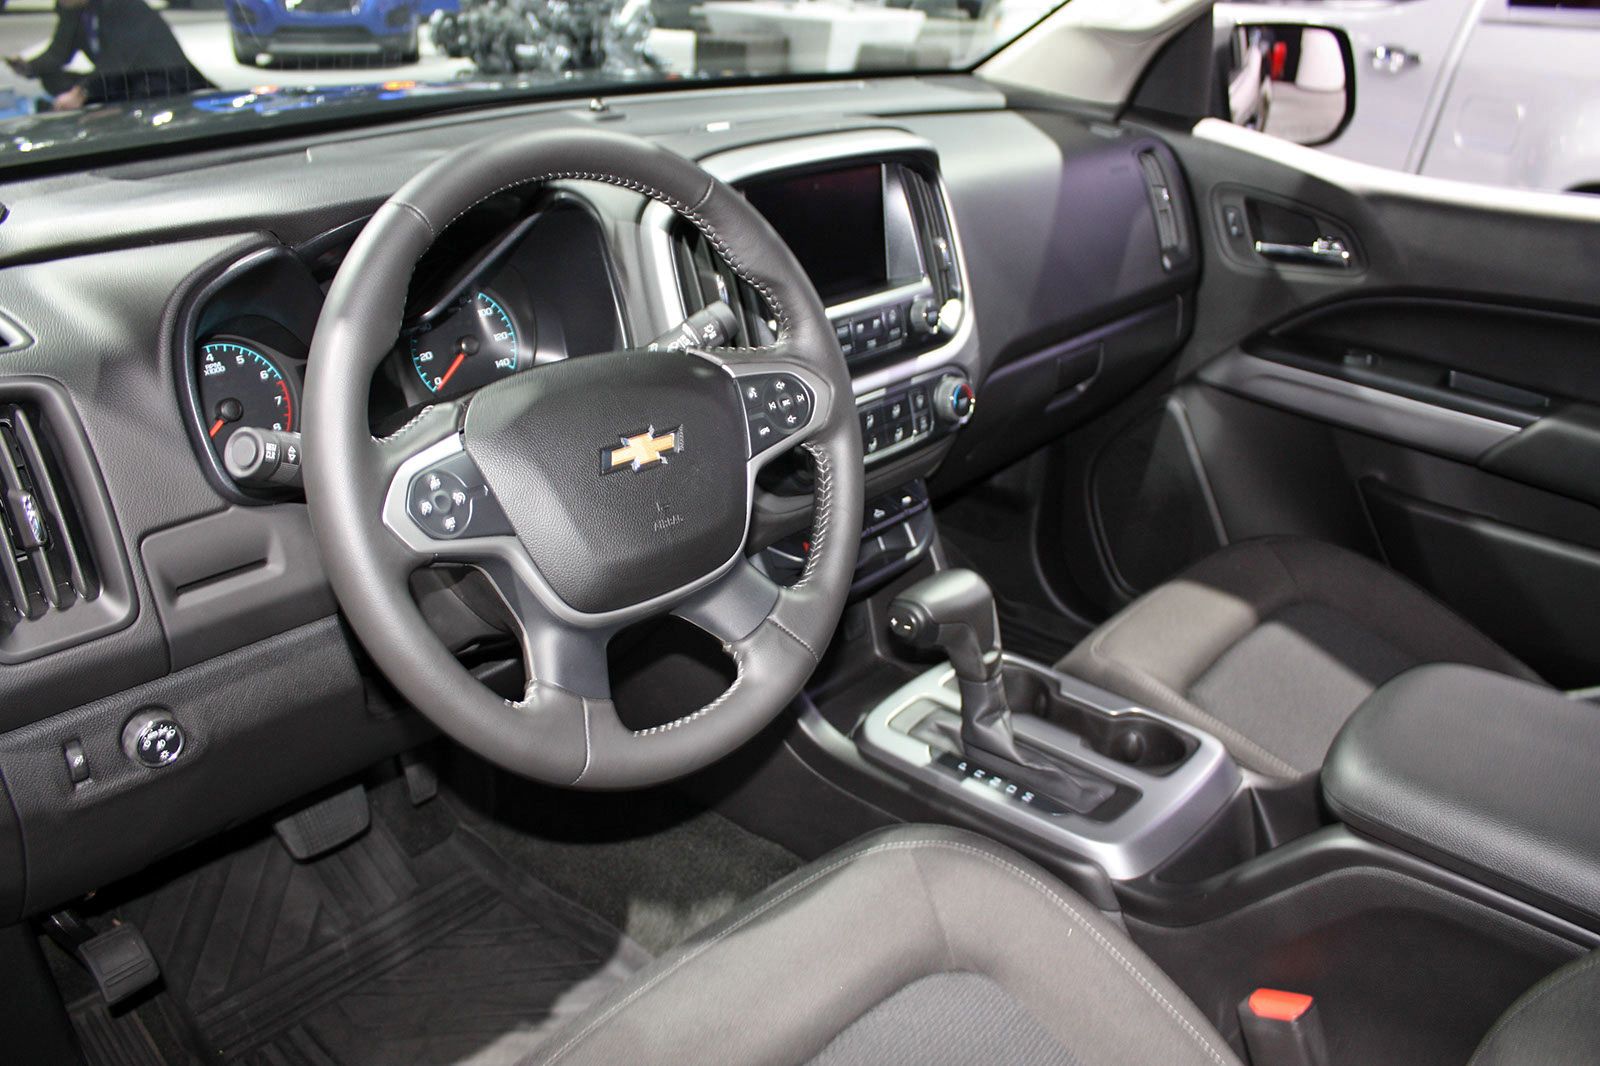 2014 Chevrolet Colorado ZR2 Concept